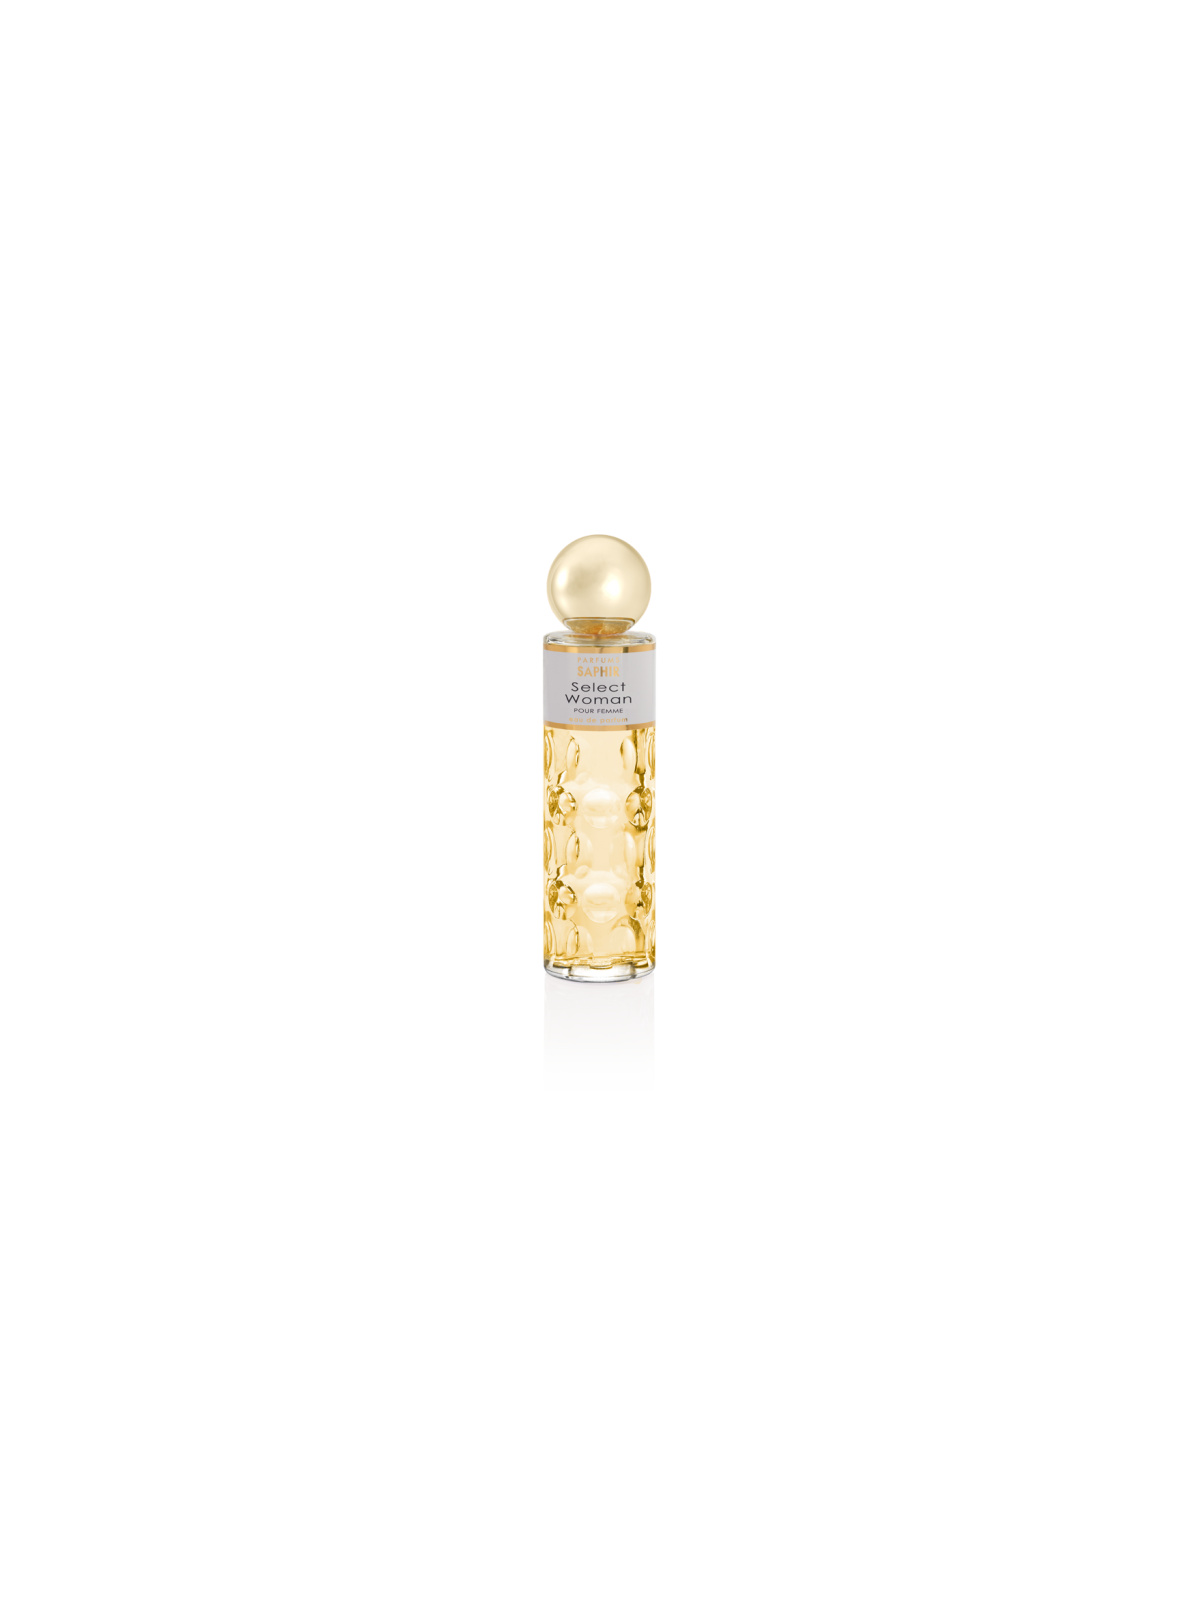 Comprar Perfume SAPHIR Select Woman 200ml. en Perfumes para mujer por sólo 13,90 € o un precio específico de 13,90 € en Thalie Care